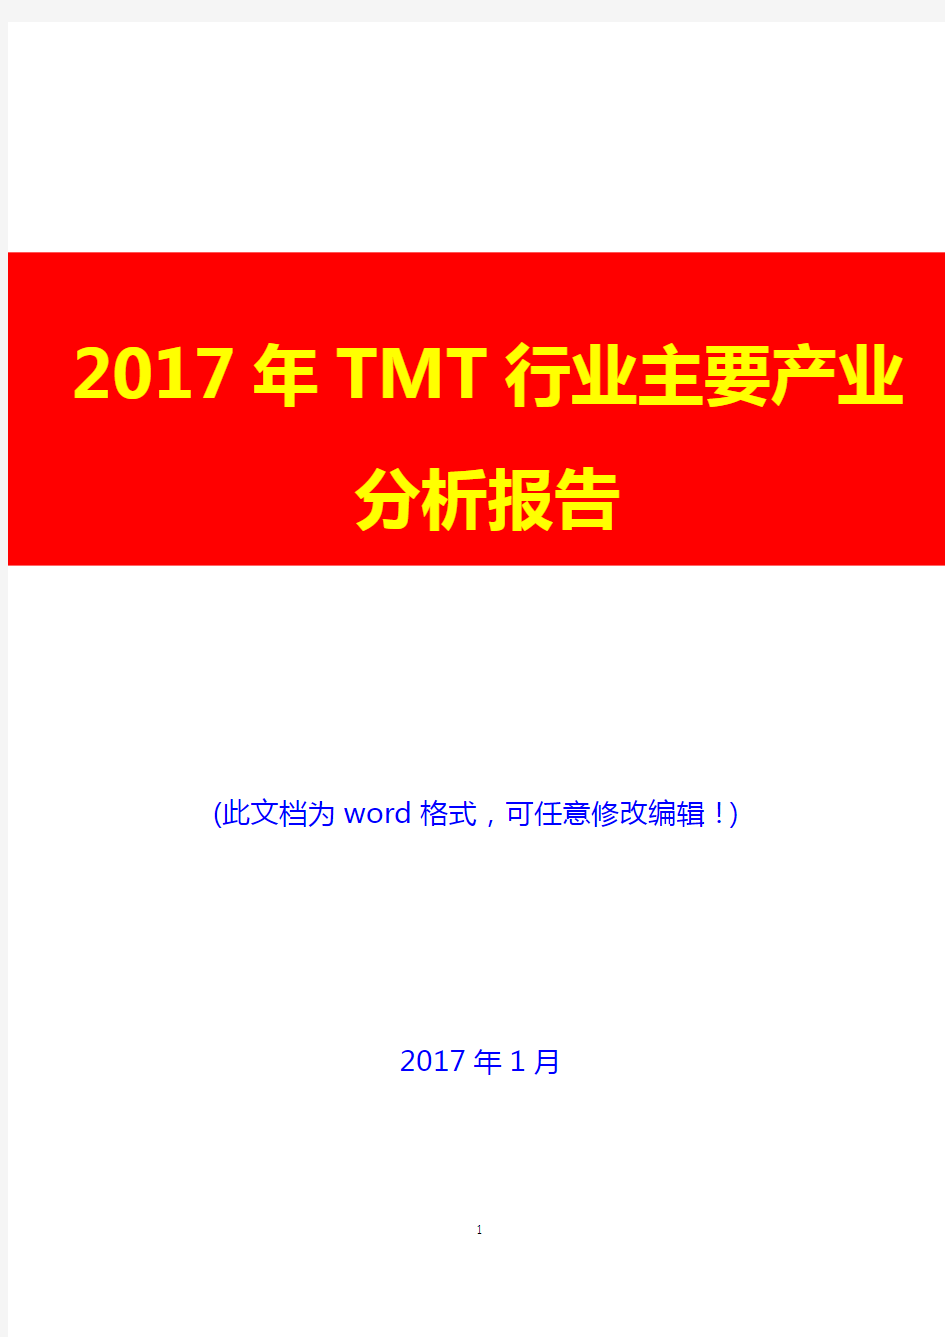 2017年TMT行业主要产业分析报告